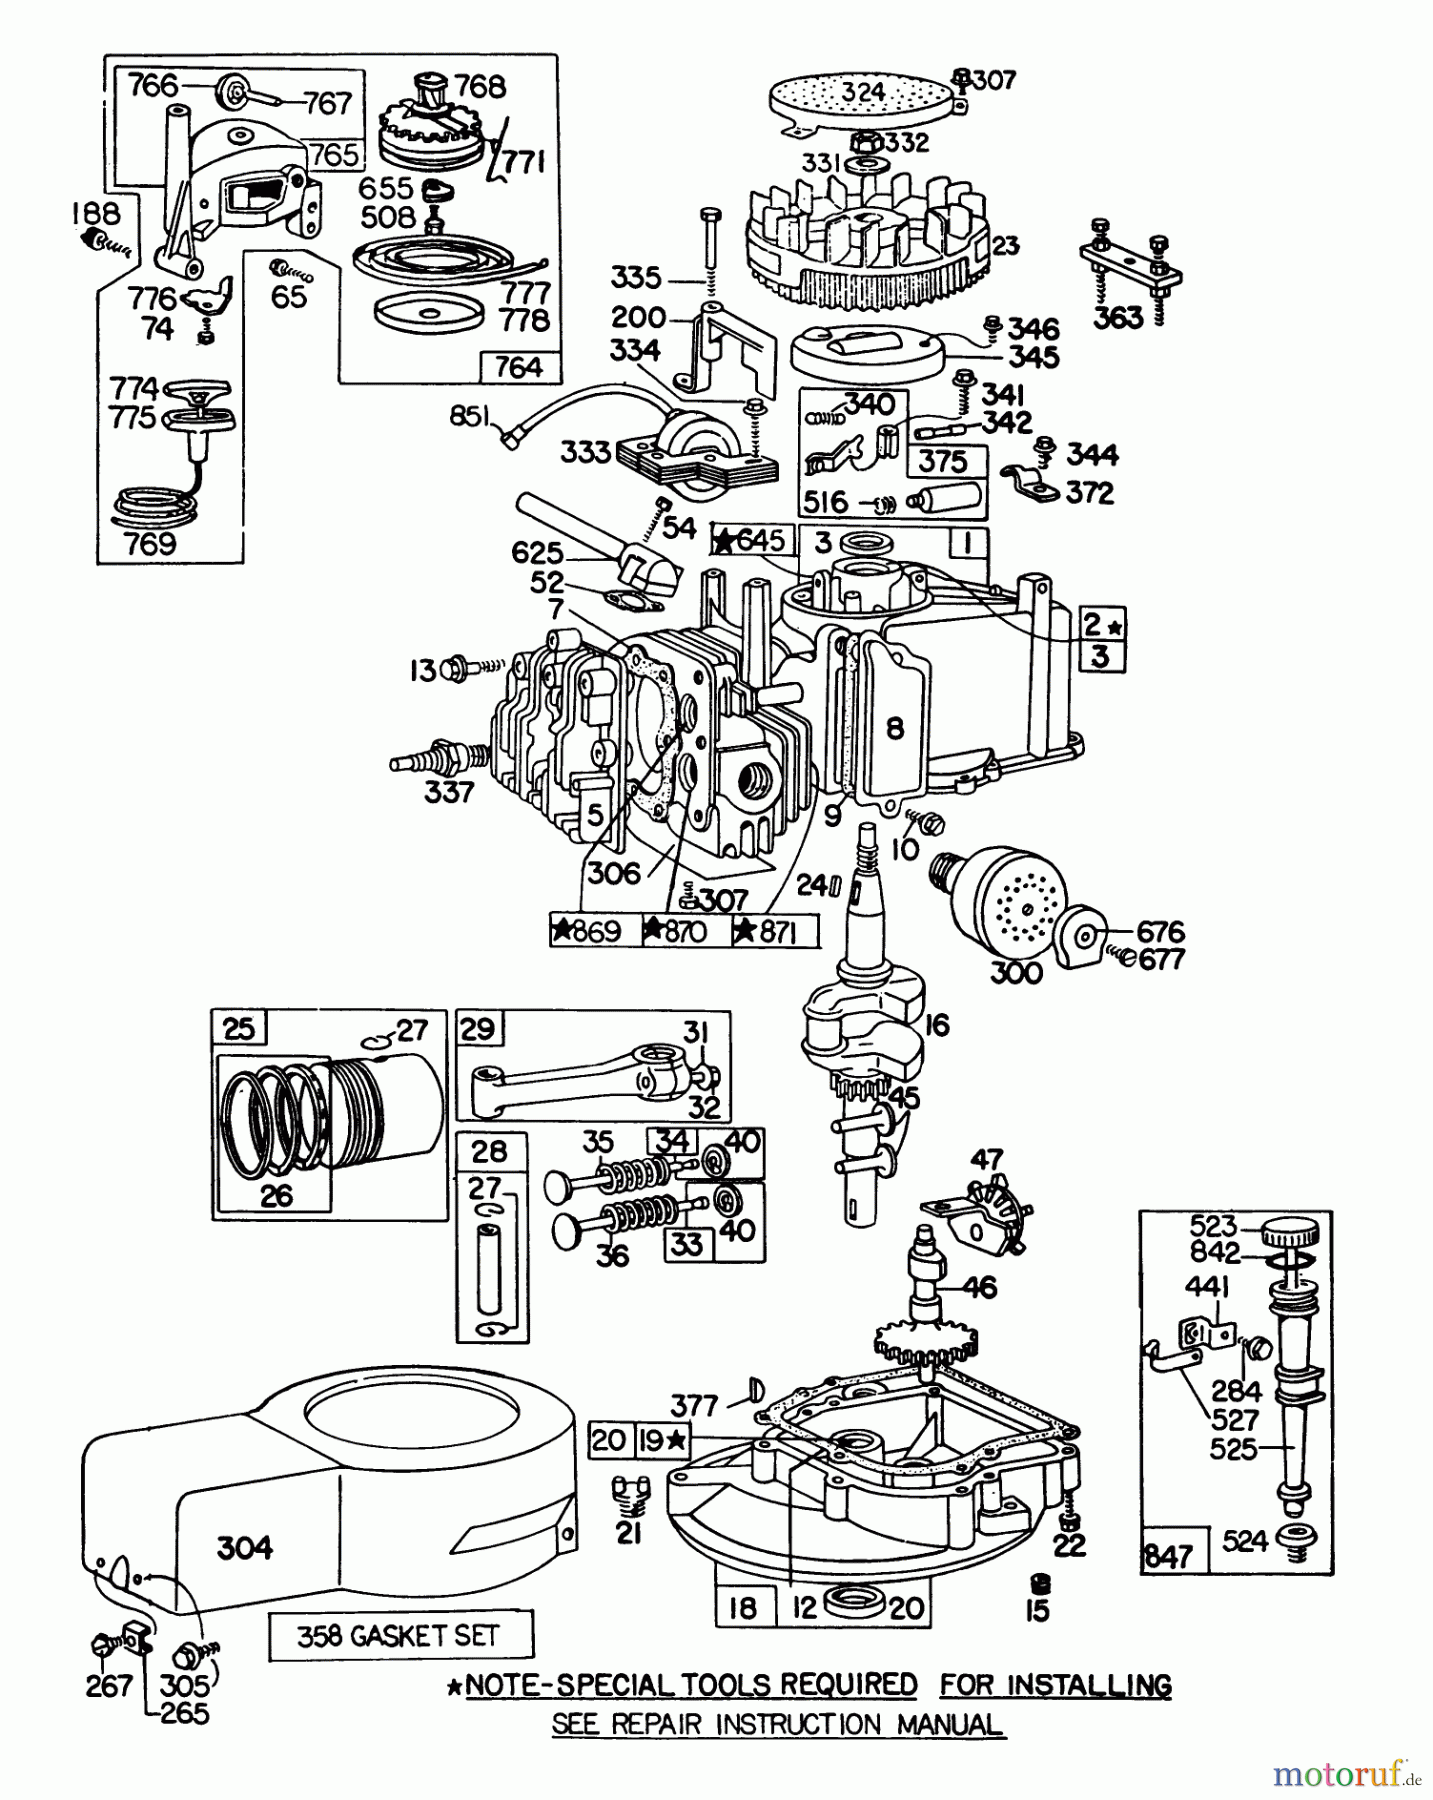  Toro Neu Mowers, Walk-Behind Seite 1 16310 - Toro Lawnmower, 1981 (1000001-1999999) ENGINE BRIGGS & STRATTON MODEL 92508-1033-01 FOR 19